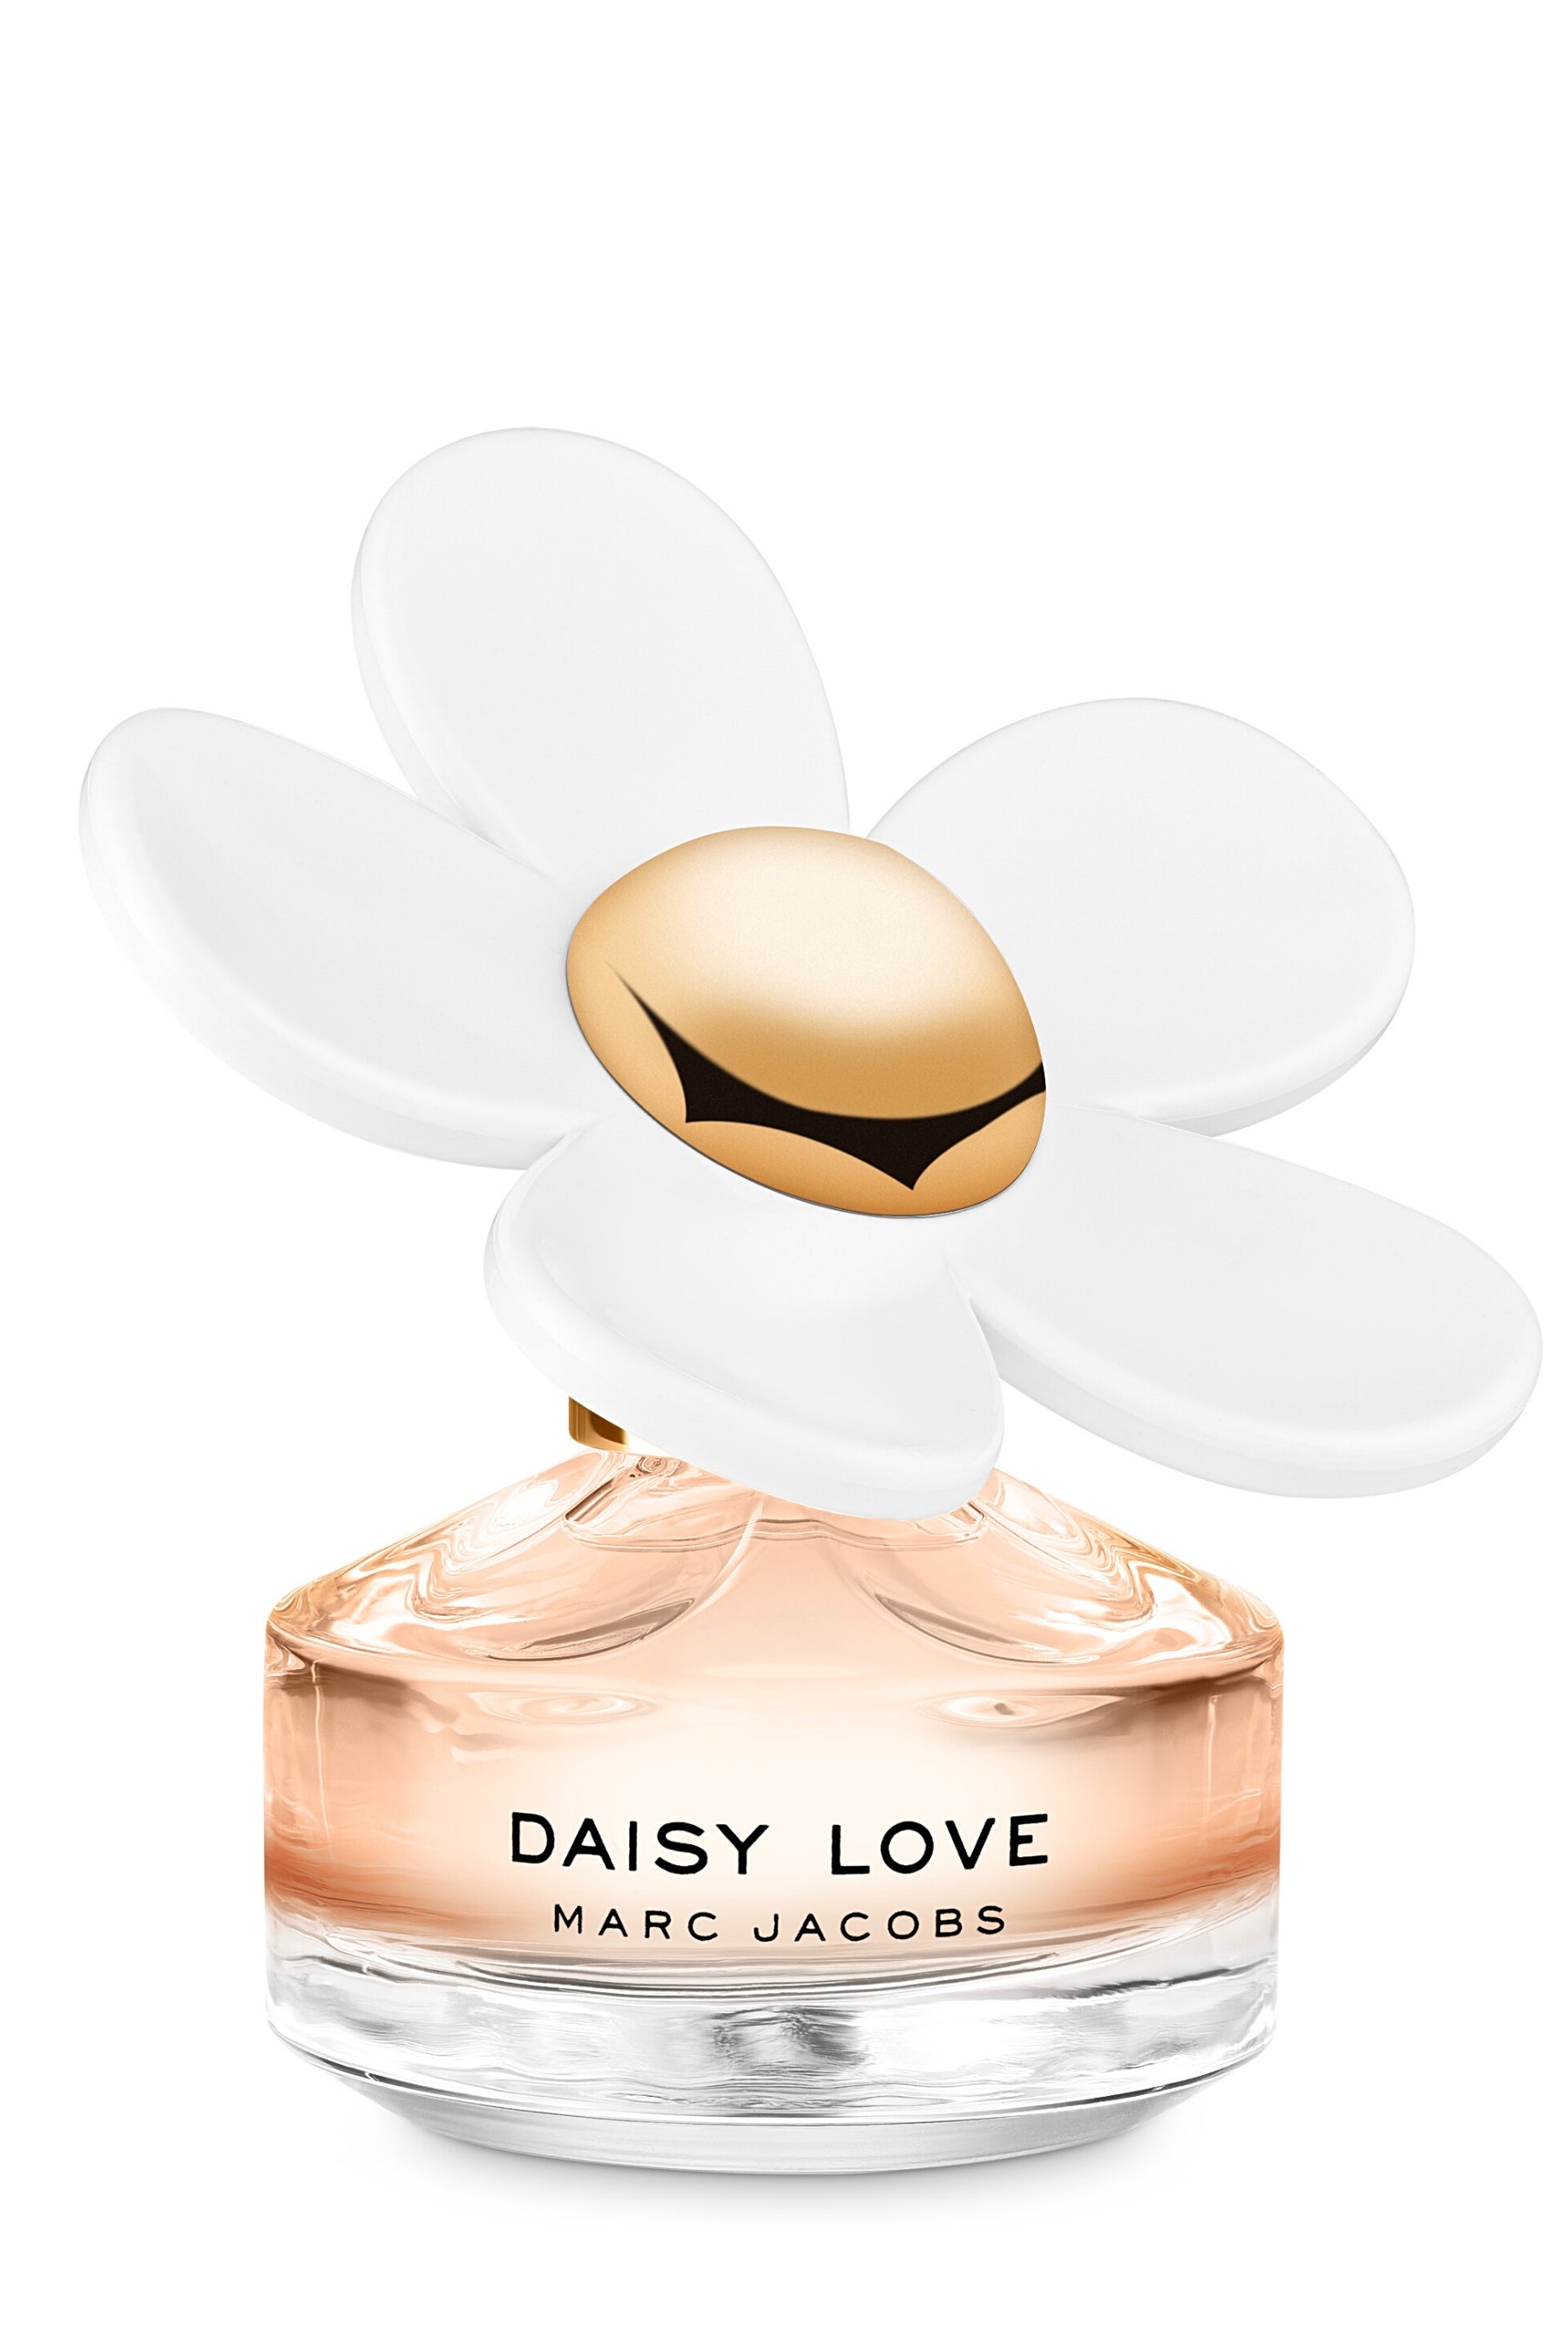 Marc Jacobs Daisy Love Eau de Toilette 150ml EDT Spray - SoLippy